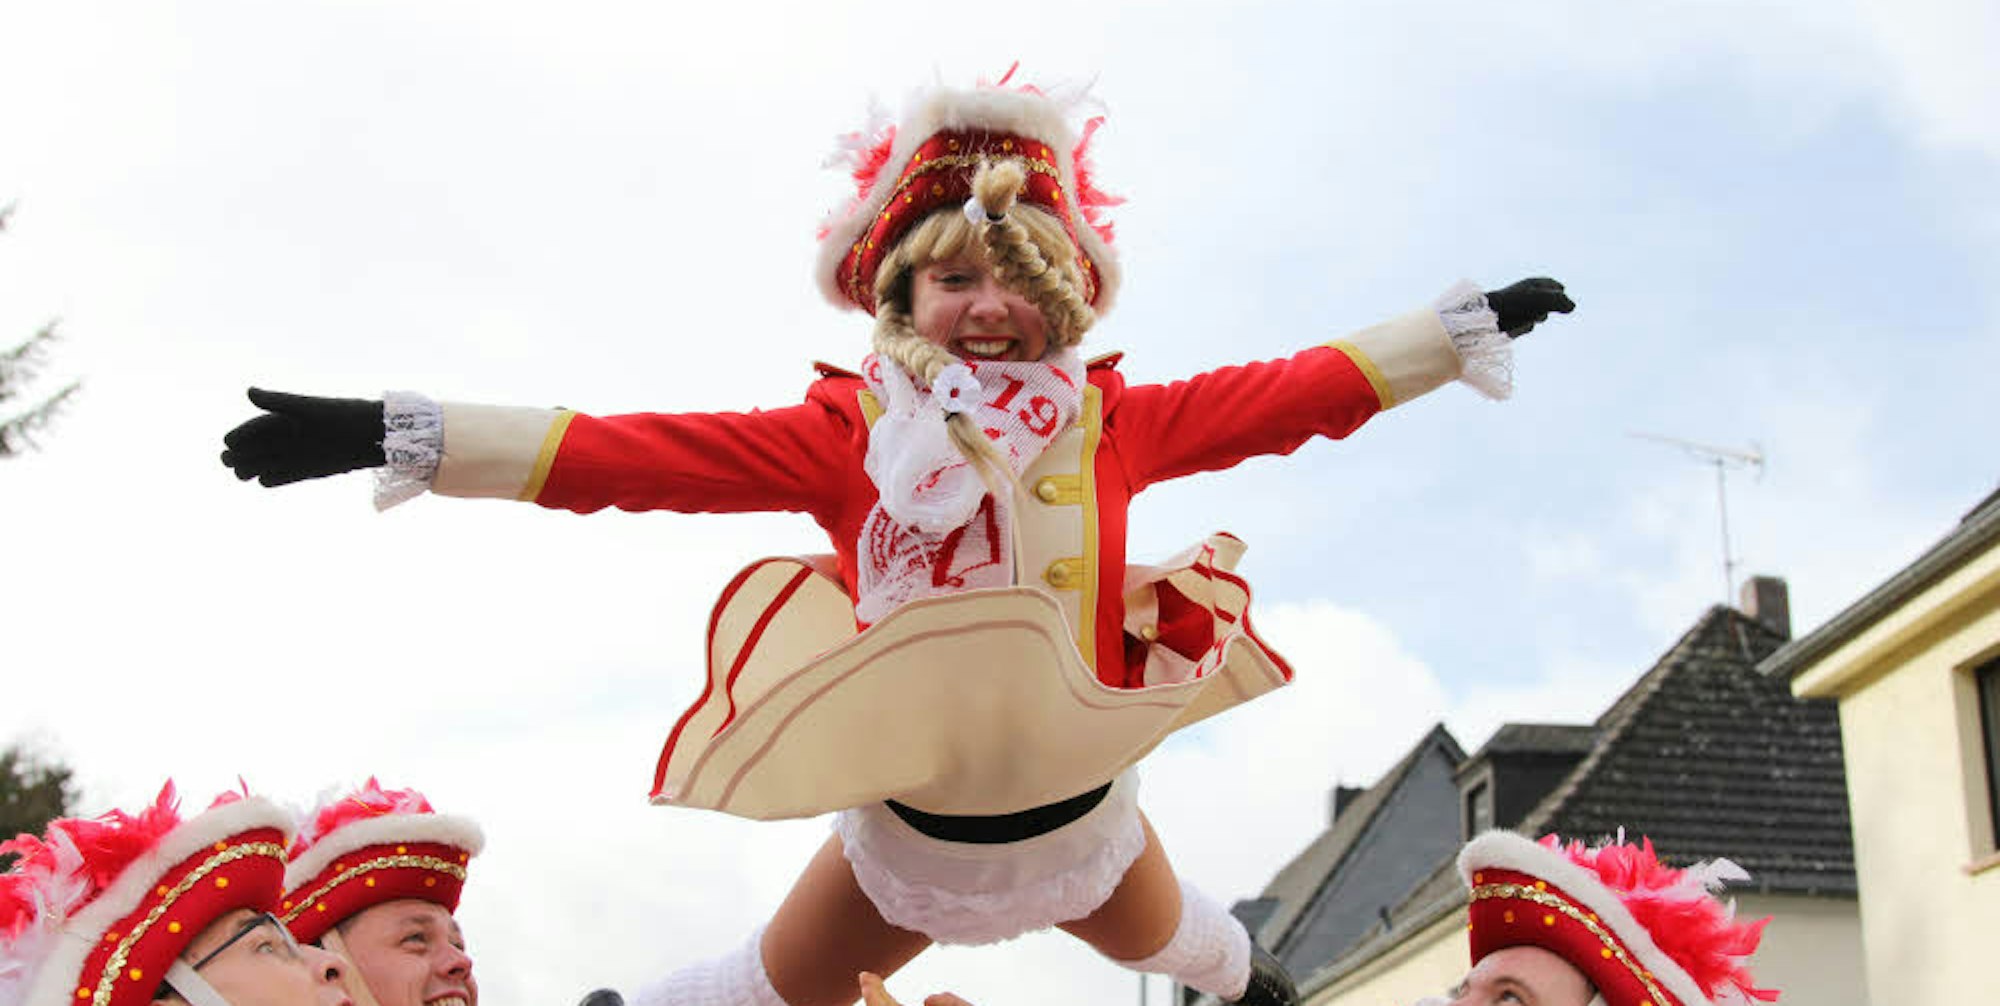 Marieche flieg! Sie gehören zum Karneval wie Bützjer und sorgten mit Tanzeinlagen und strahlendem Lächeln für gute Laune.